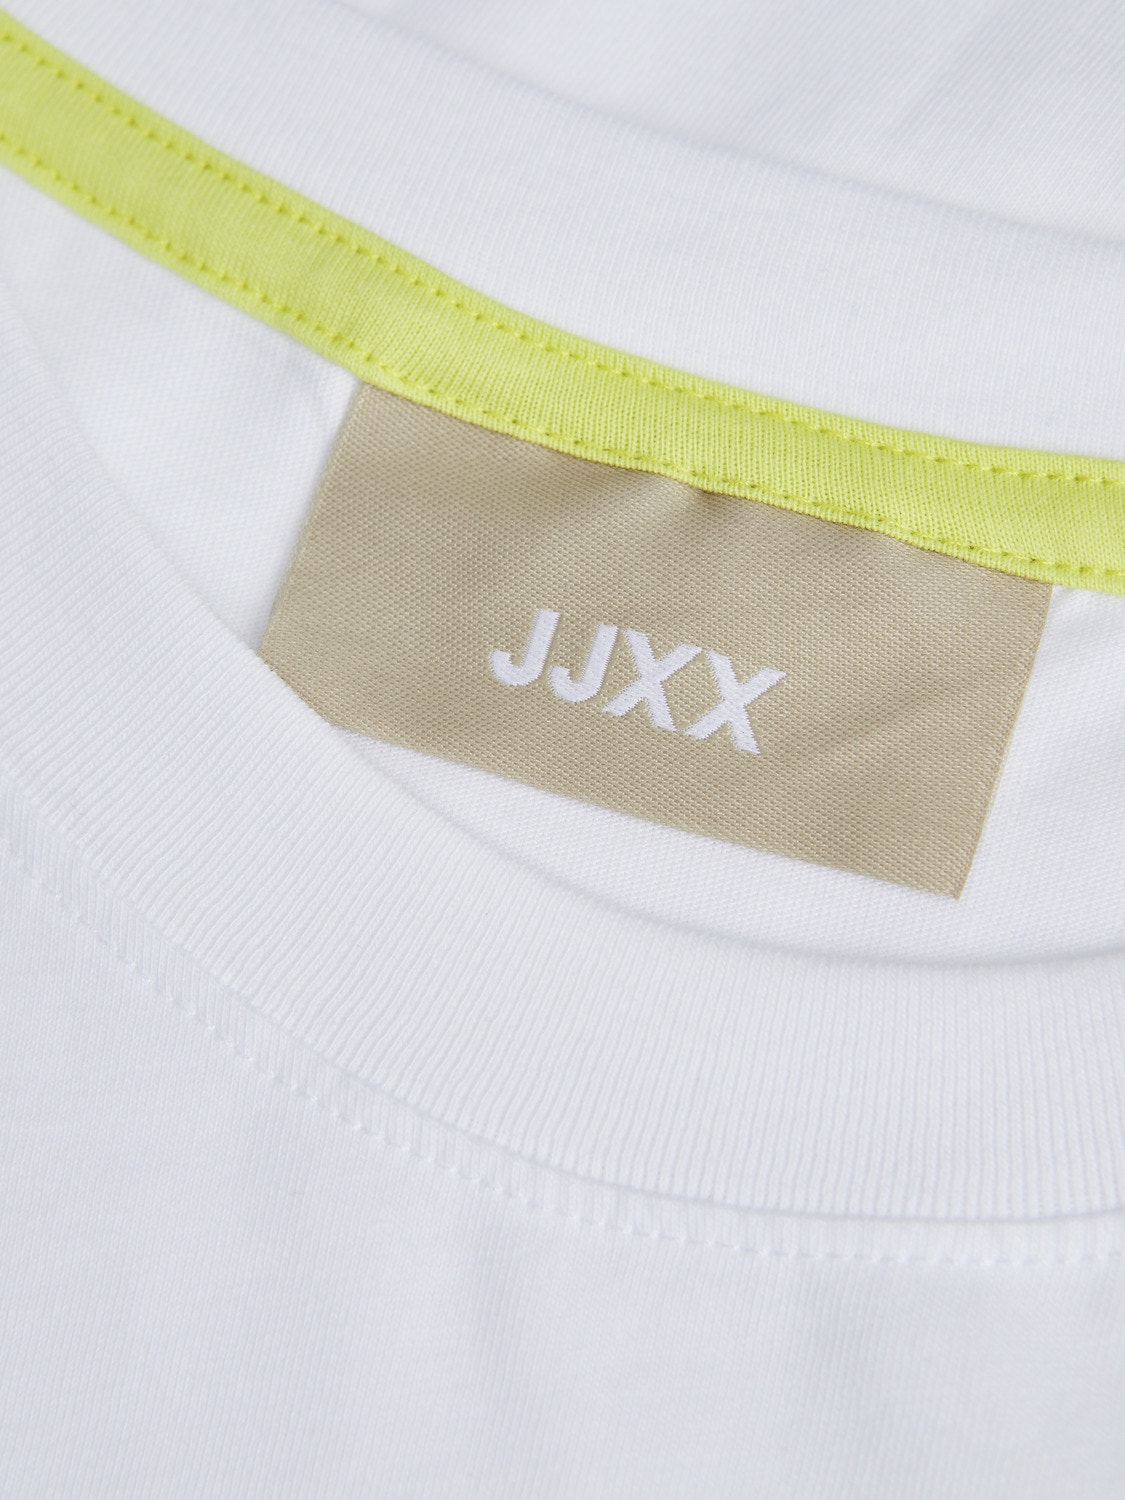 JJXX JXANNA T-skjorte -Bright White - 12236267